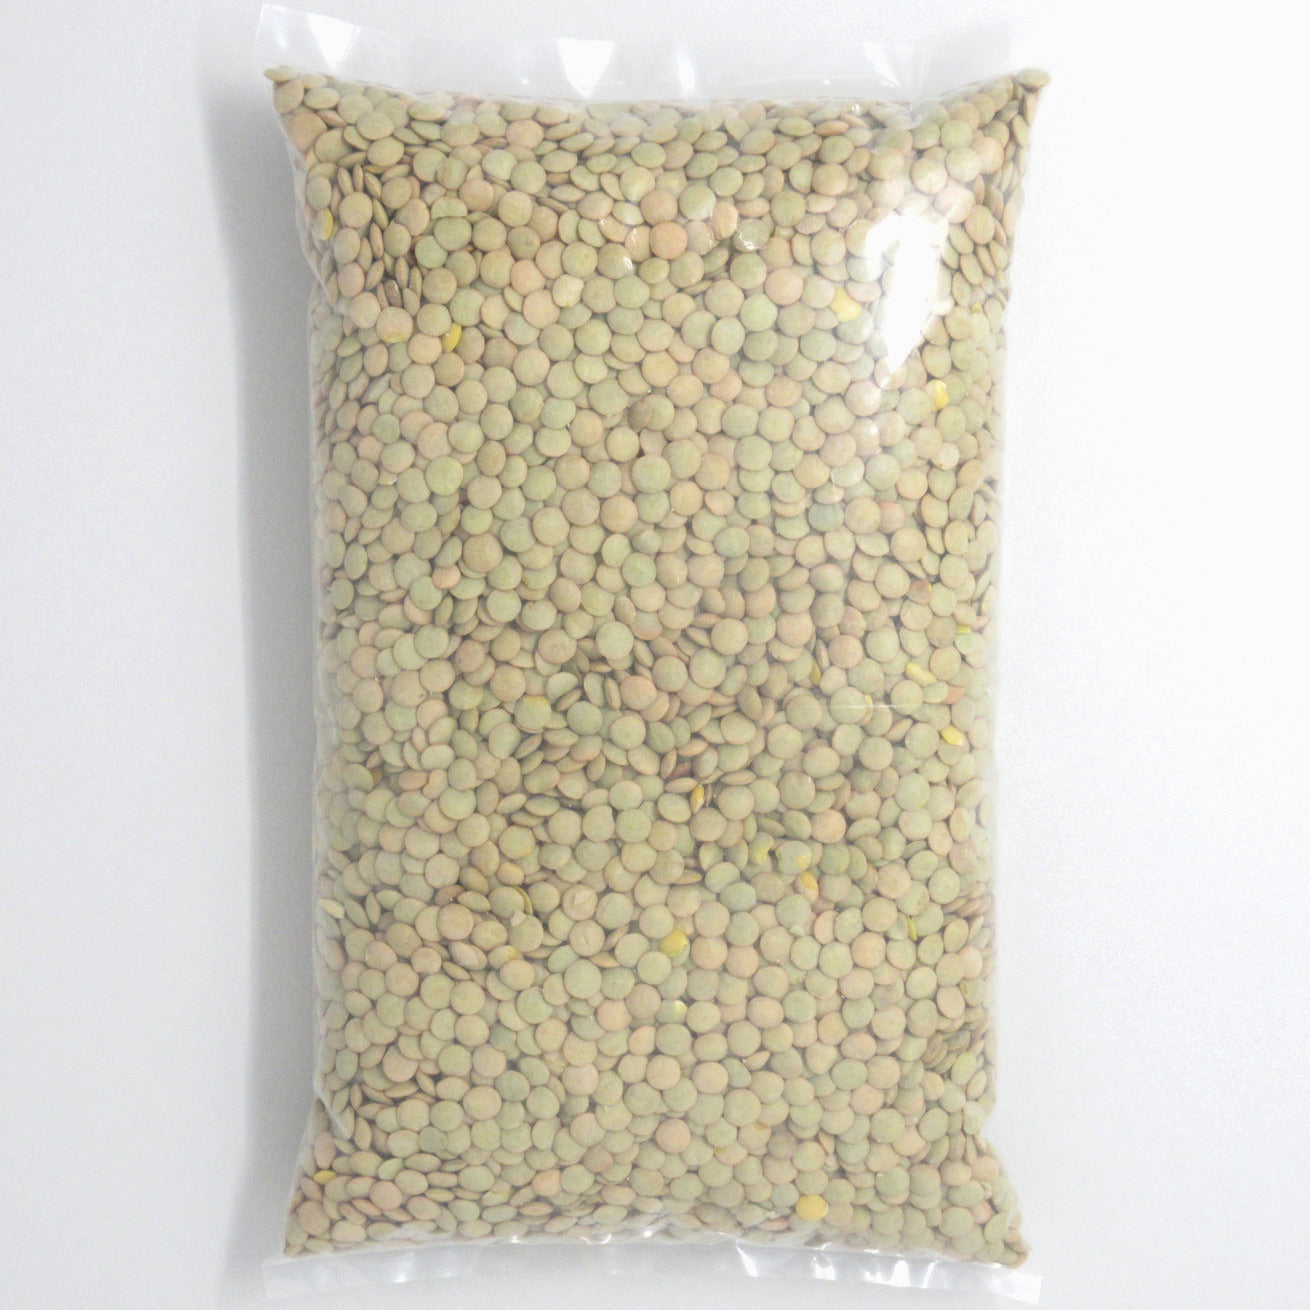 Flour Barrel product image - Green Lentils